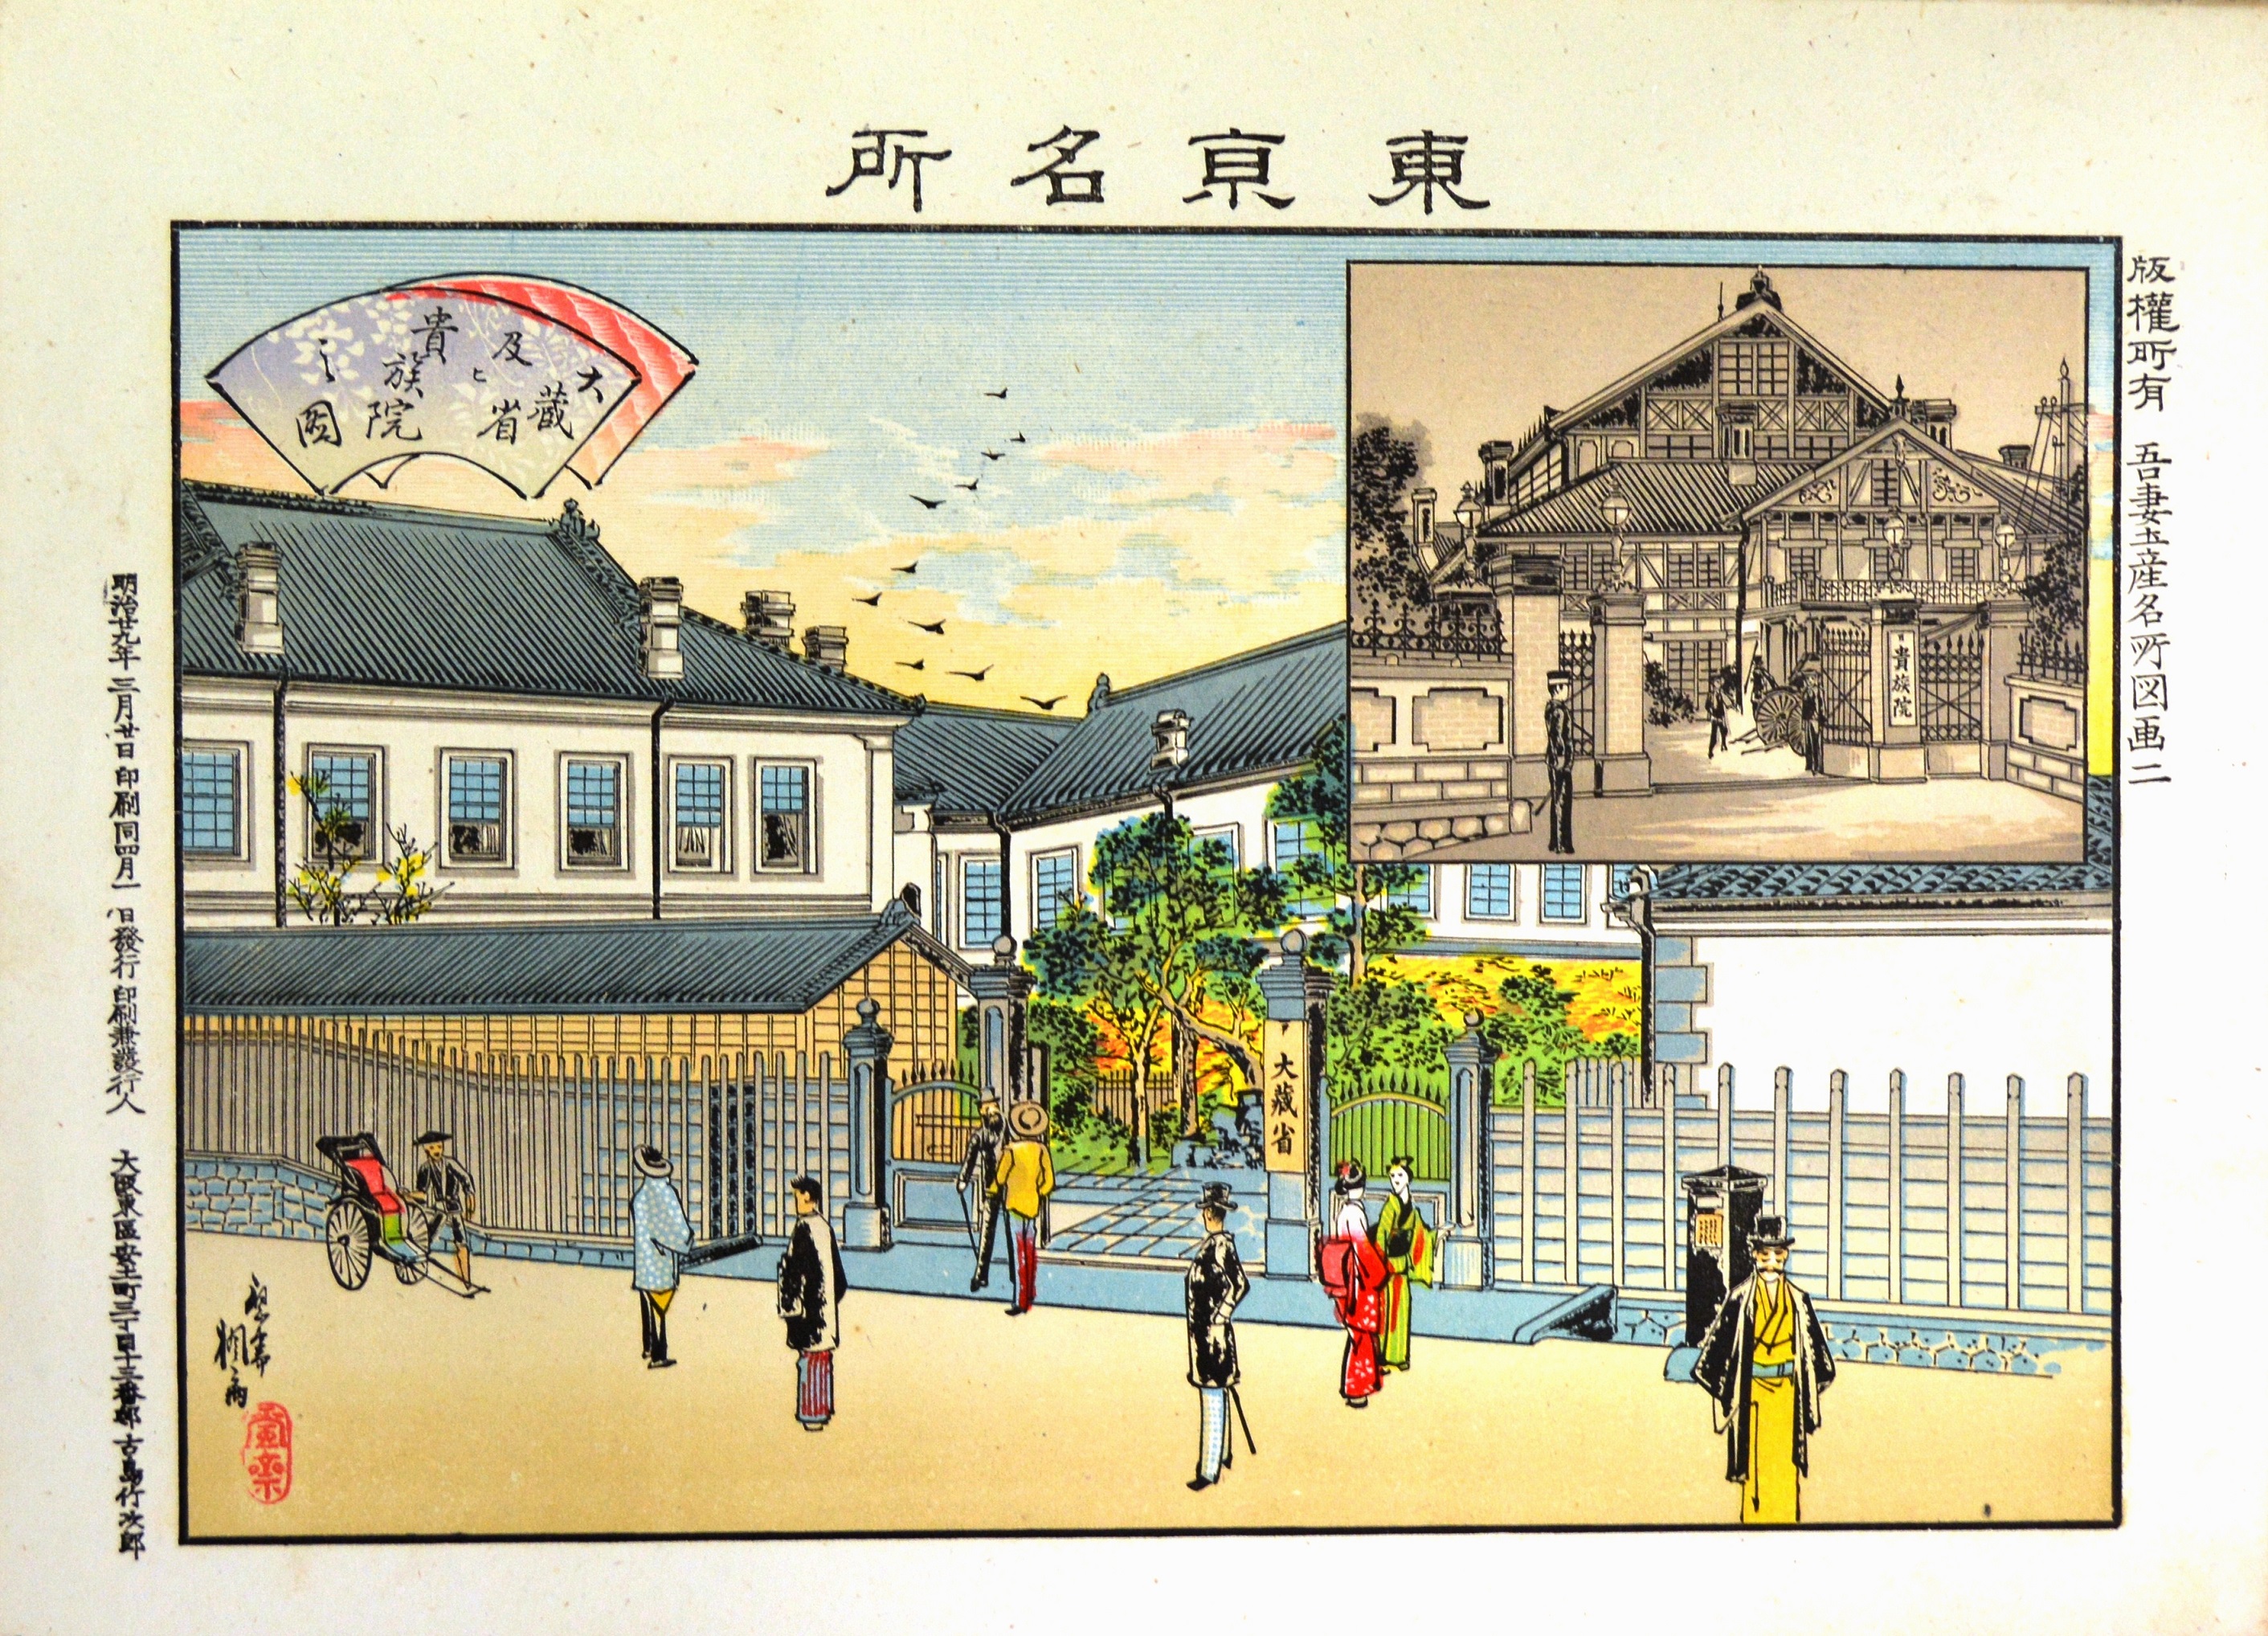 大蔵省庁舎と帝国議会議事堂1